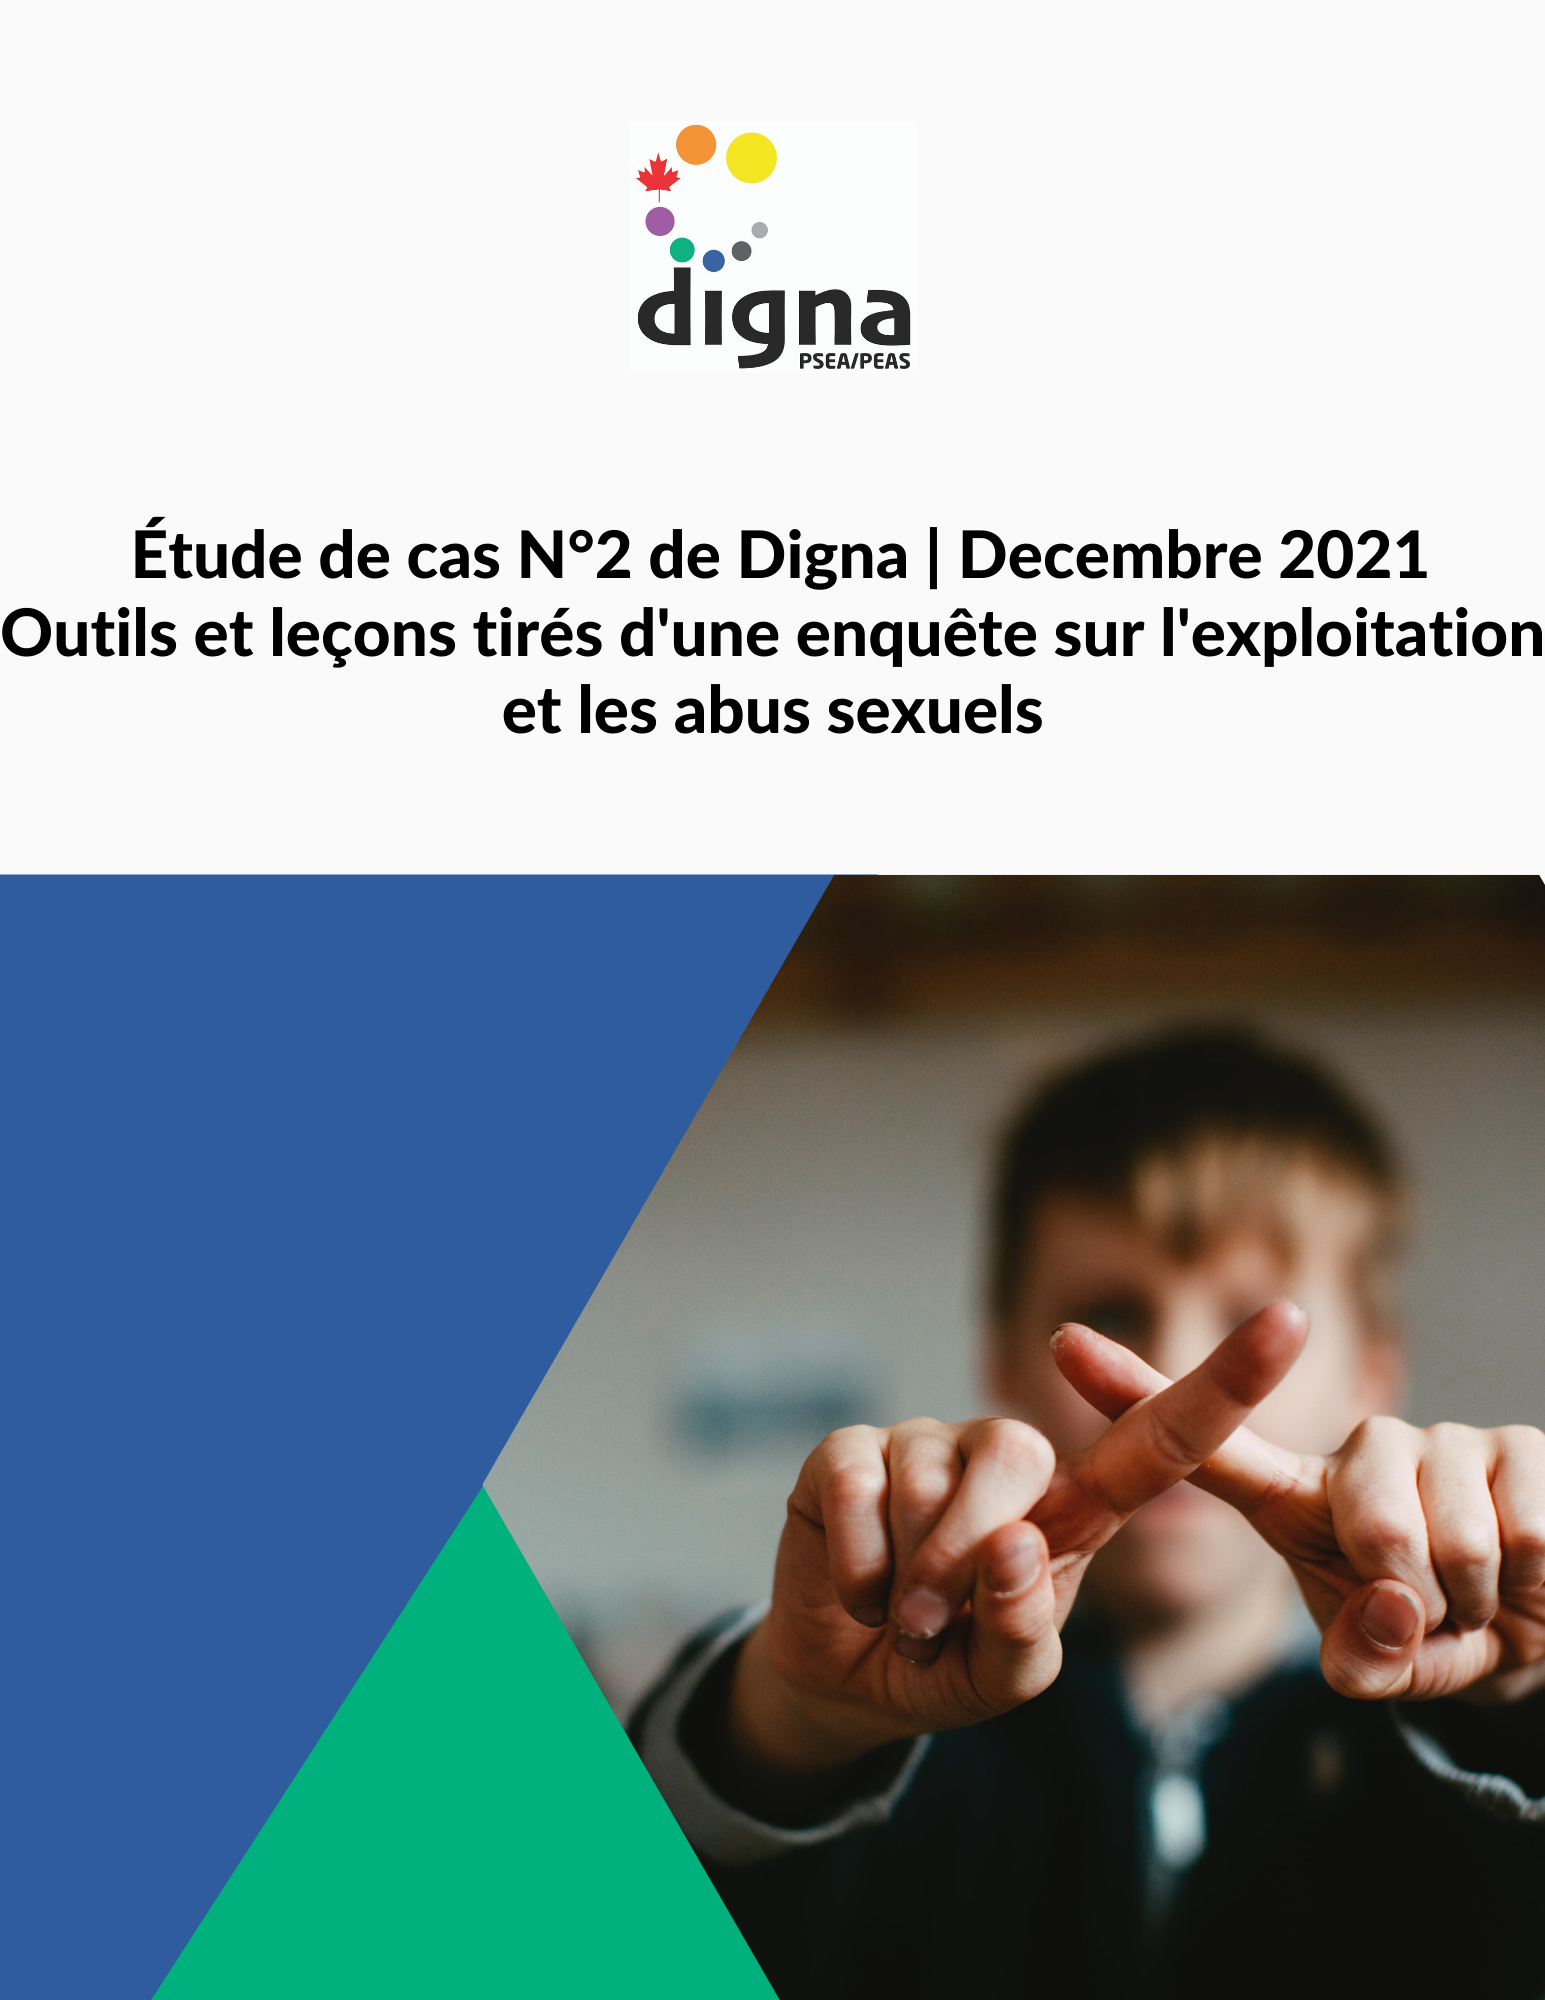 Outils et leçons tirés d'une enquête sur l'exploitation et les abus sexuels  - Digna